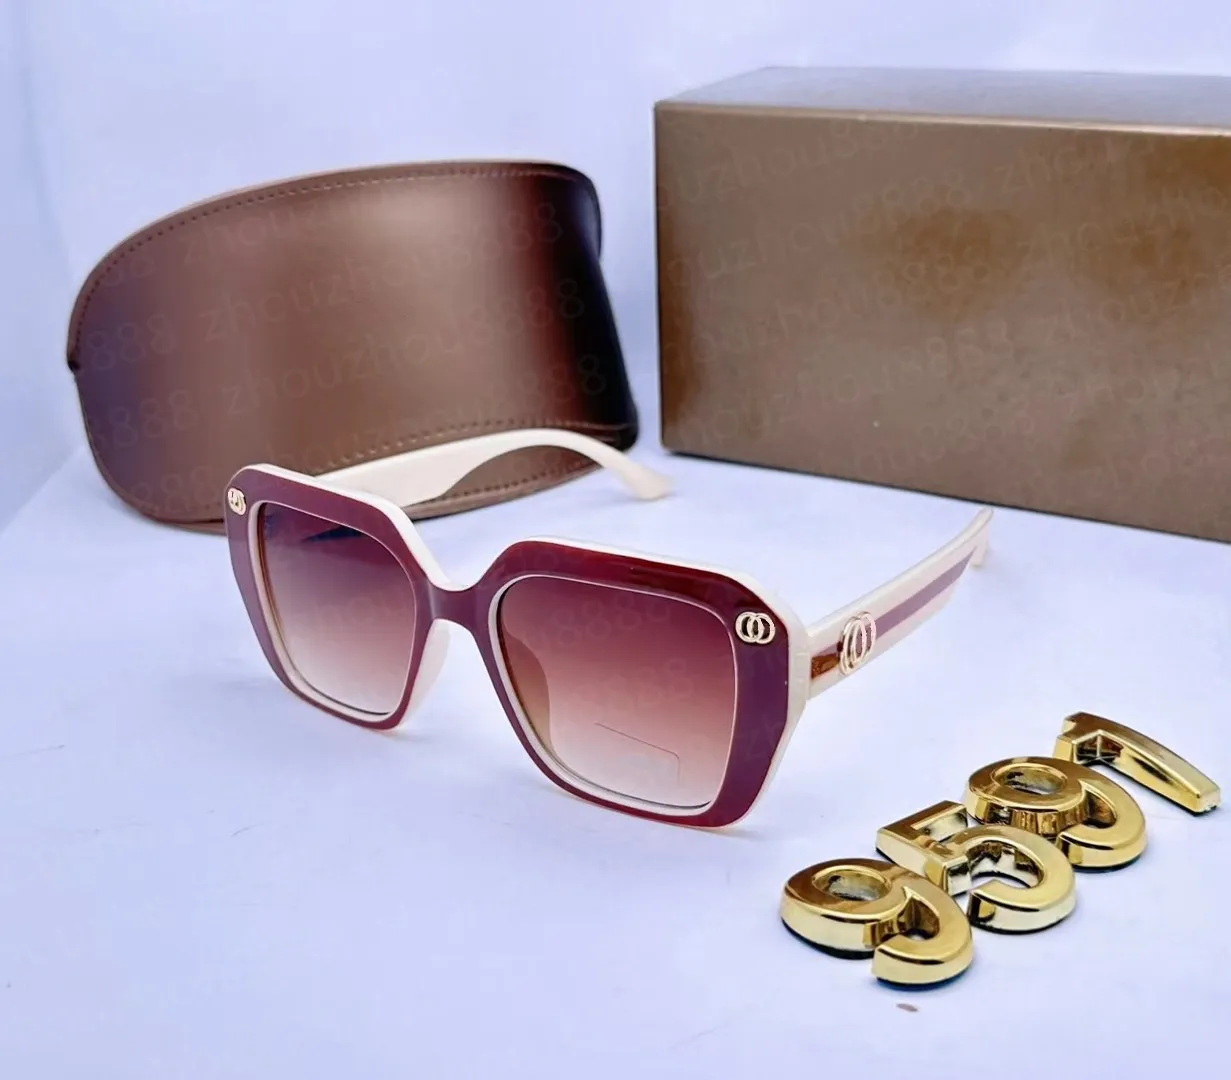 2024Top Qualität polarisierte Sonnenbrille Glaslinse klassische Pilot Metall Markensonnenbrille Männer Frauen Urlaub Mode UV400 Brillen Metallrahmen Polaroid Linse 57 mm